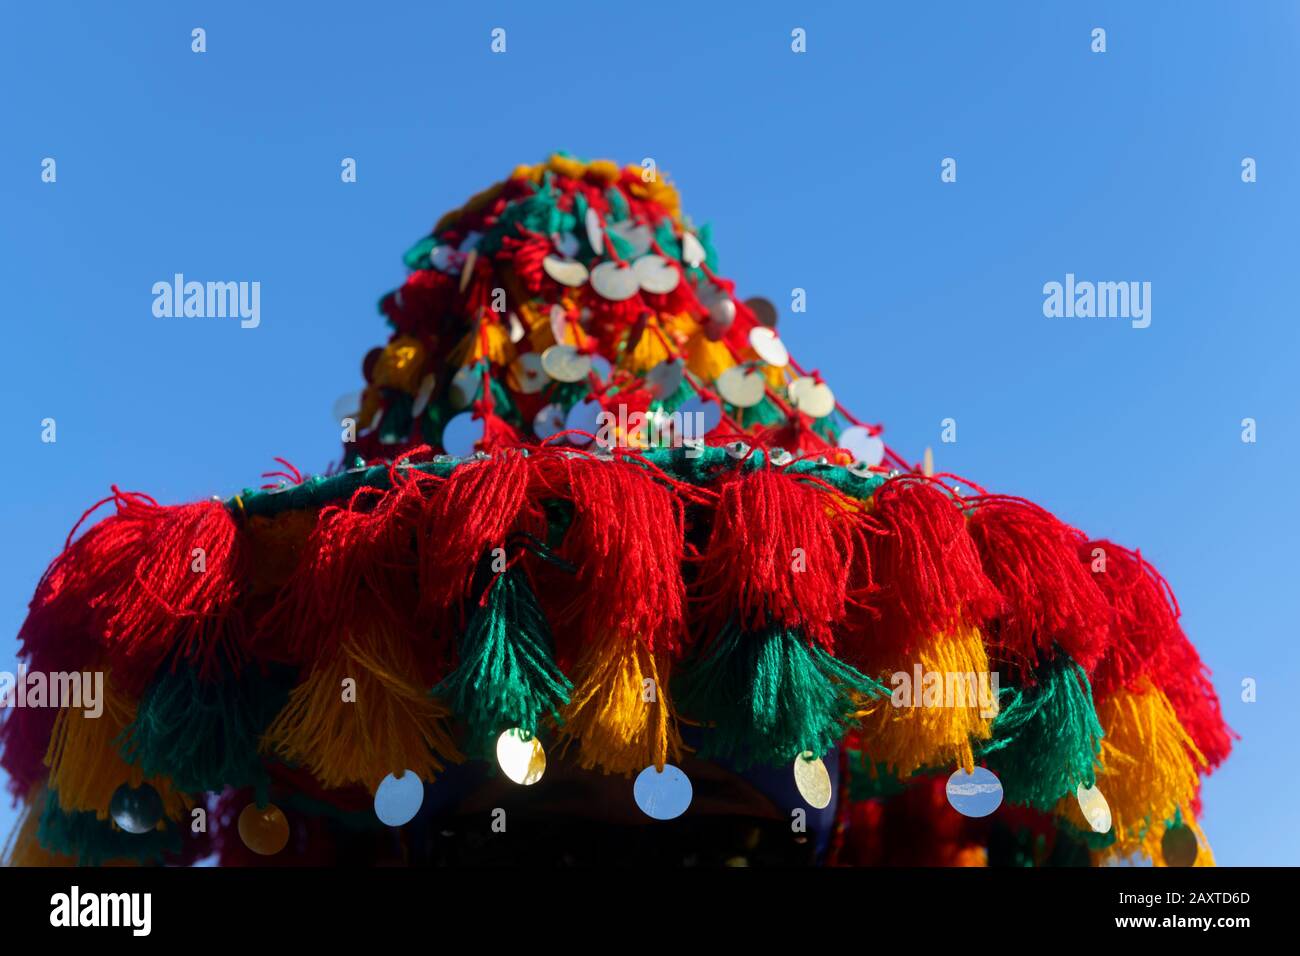 Kultiger, bunter Hut eines traditionellen Wasserverkäufers in Marrakesch, Marokko, gegen den blauen Himmel. Stockfoto